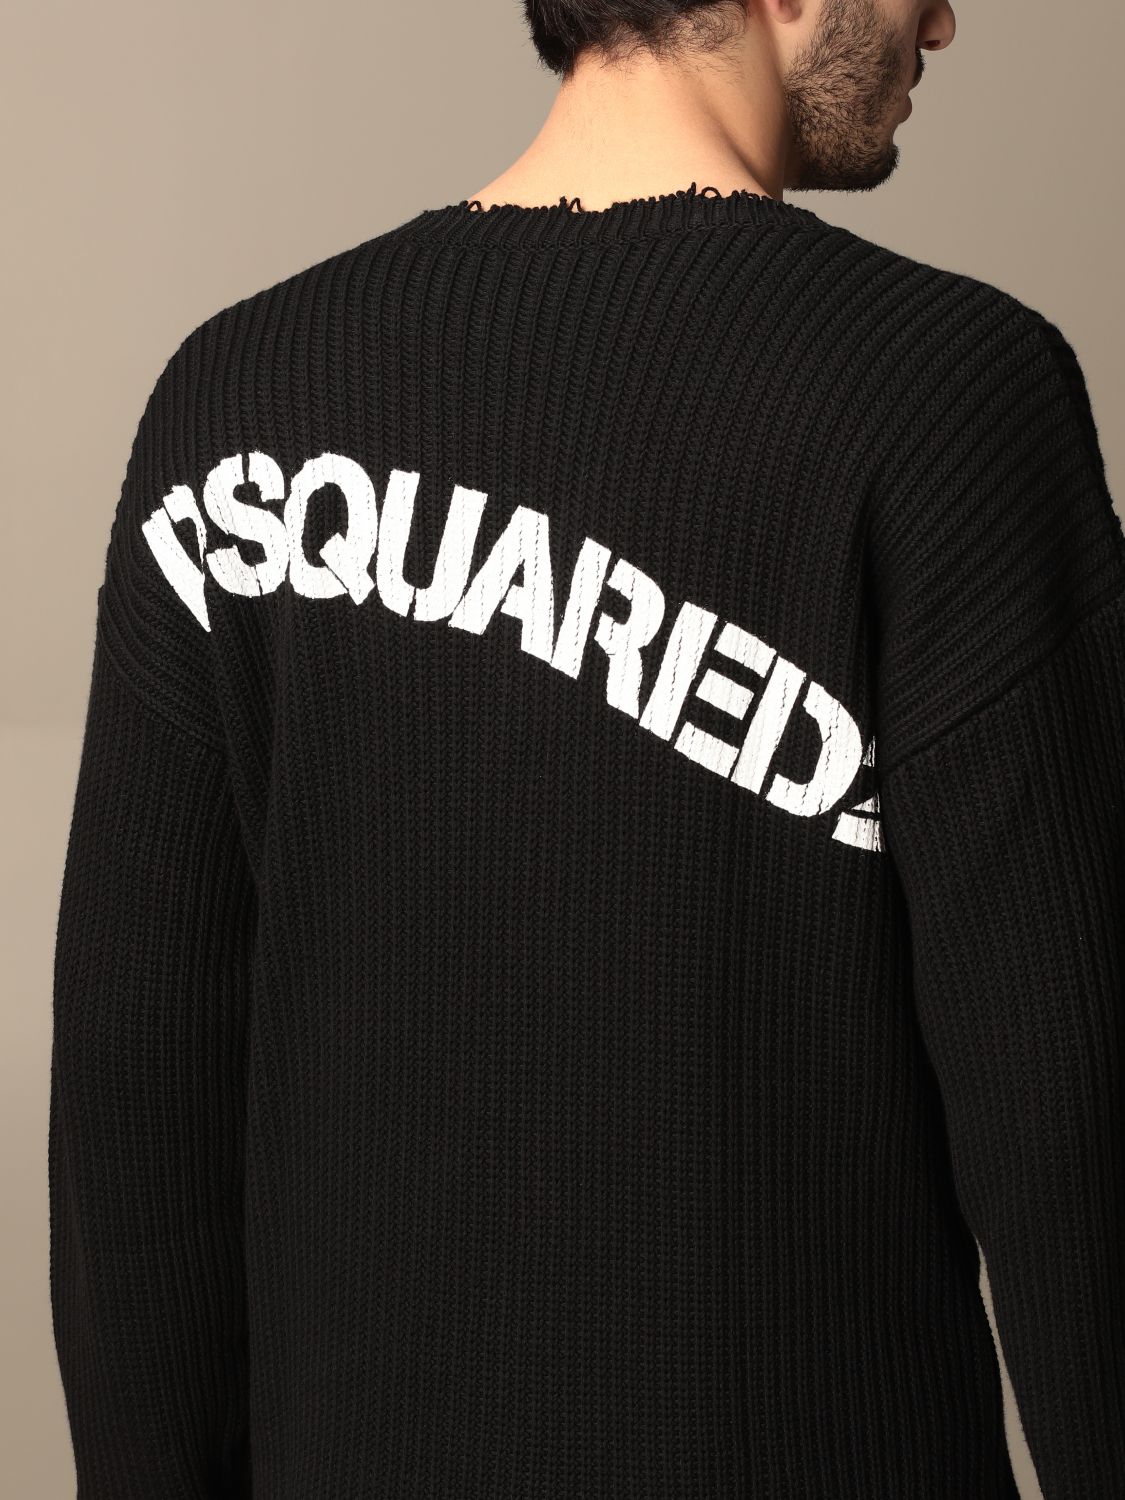 Pullover Dsquared2: Sweatshirt herren Dsquared2 schwarz 4